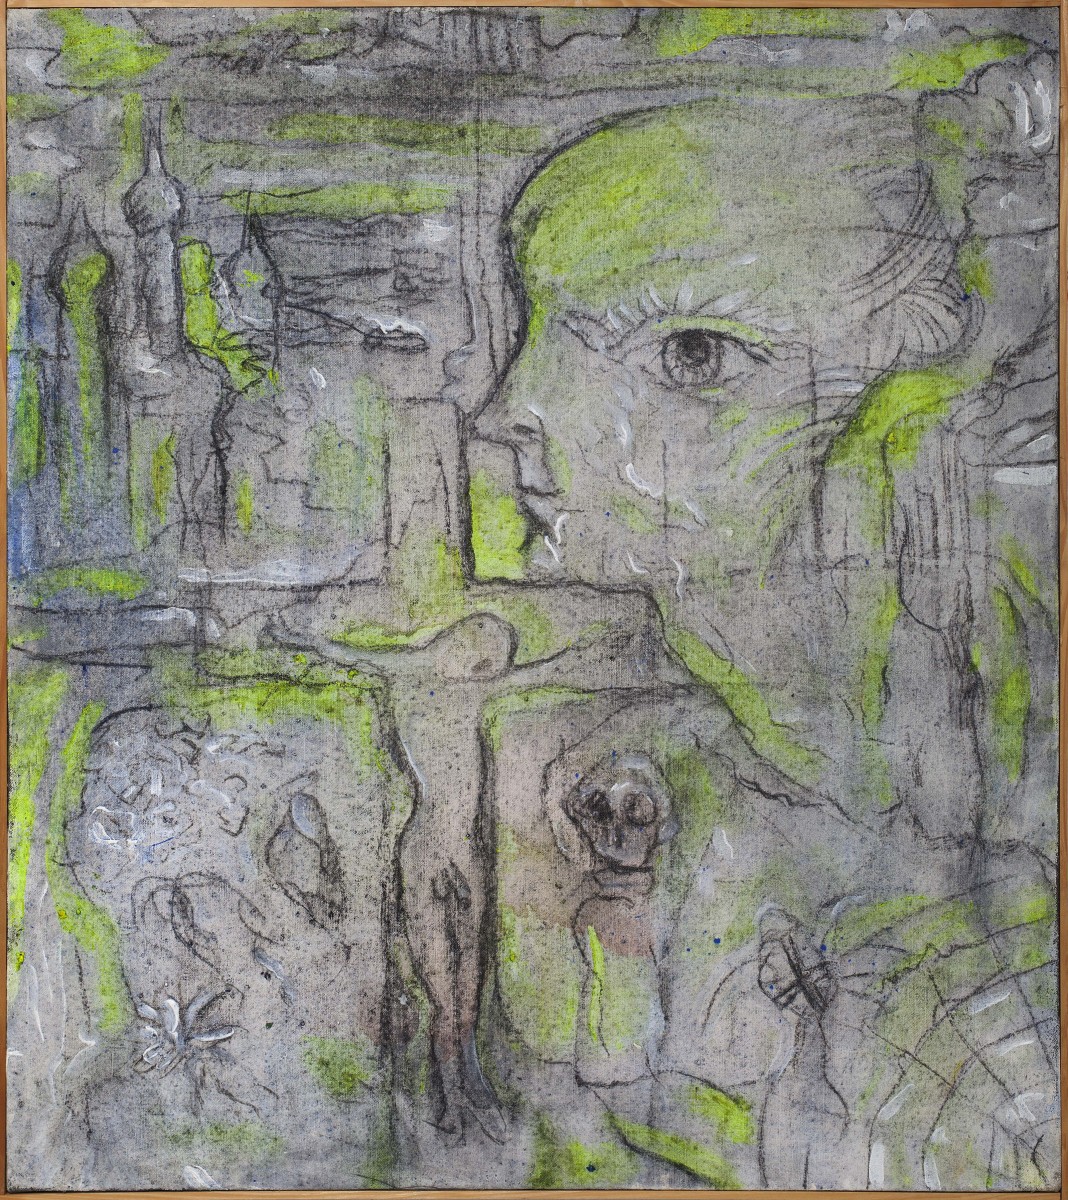 Můj pohled skrze tebe; 80x90 cm; akryl a uhel na plátně; 1997